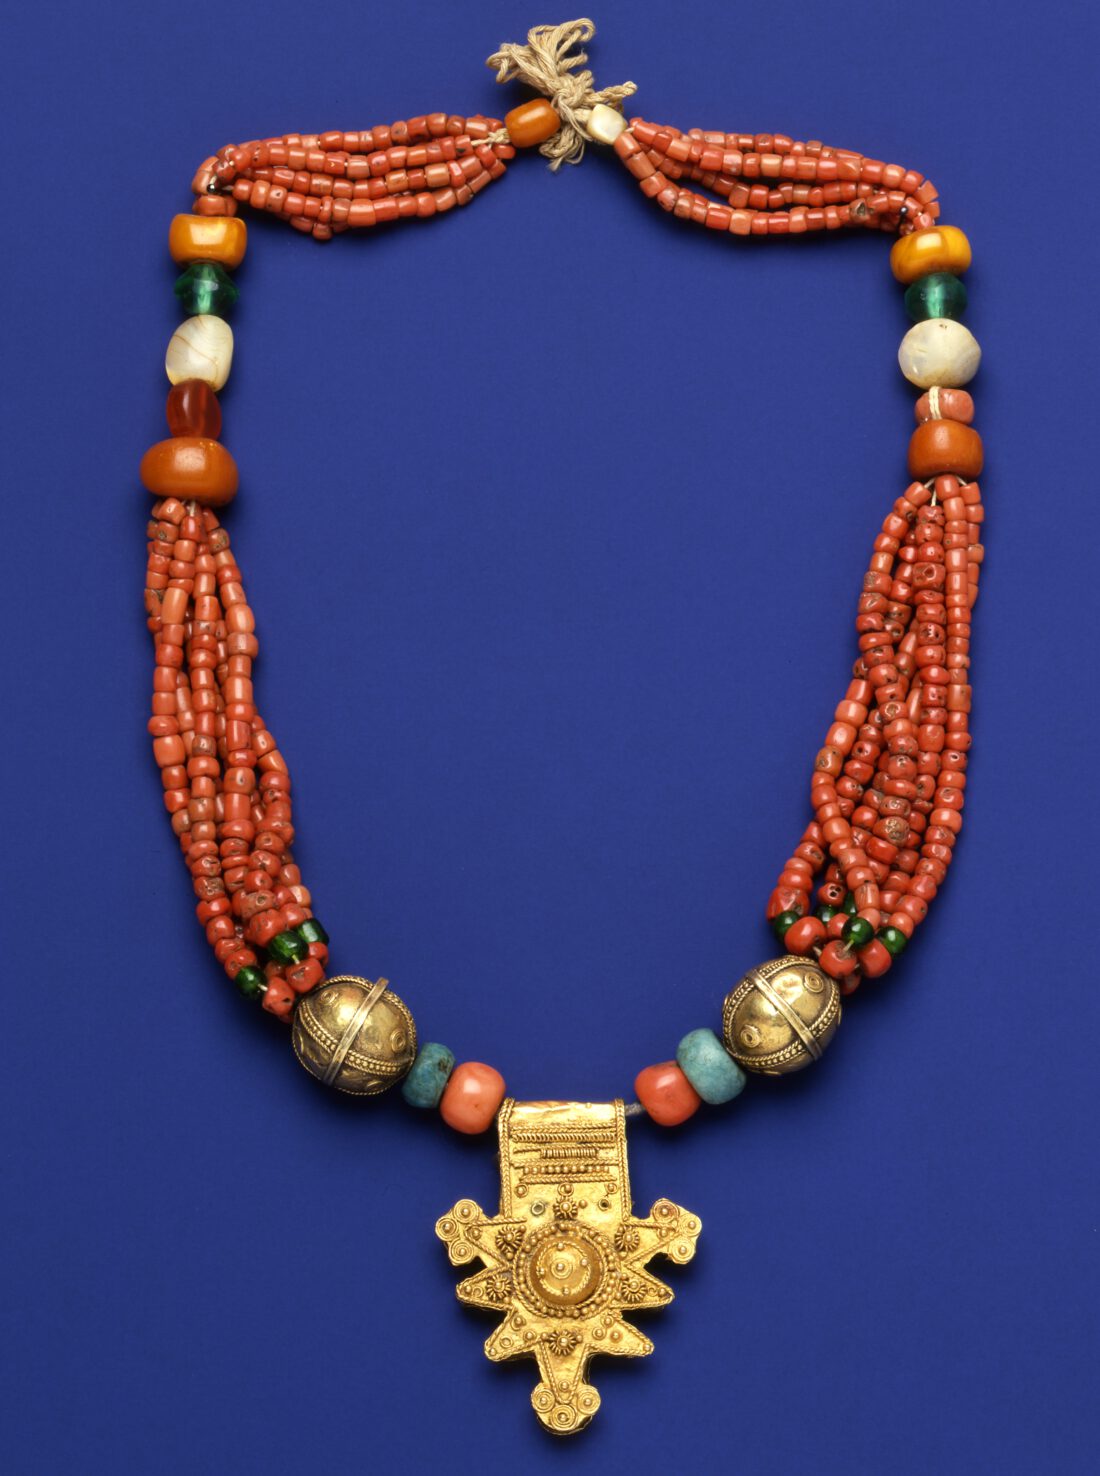 Halskette mit überwiegend roten Perlen und einem Goldanhänger